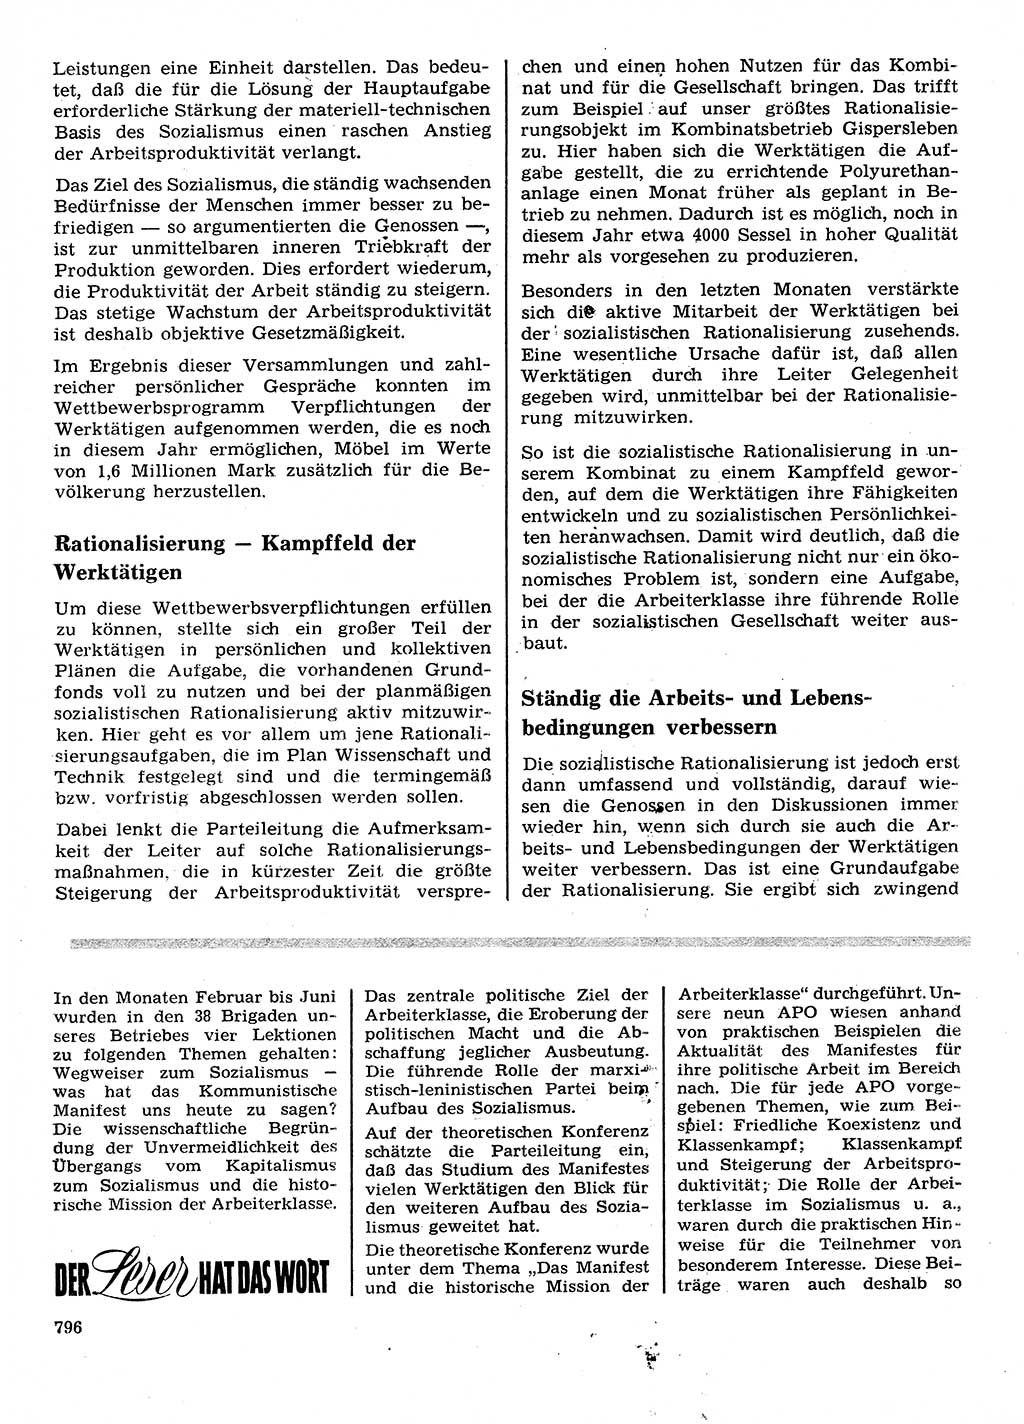 Neuer Weg (NW), Organ des Zentralkomitees (ZK) der SED (Sozialistische Einheitspartei Deutschlands) fÃ¼r Fragen des Parteilebens, 28. Jahrgang [Deutsche Demokratische Republik (DDR)] 1973, Seite 796 (NW ZK SED DDR 1973, S. 796)